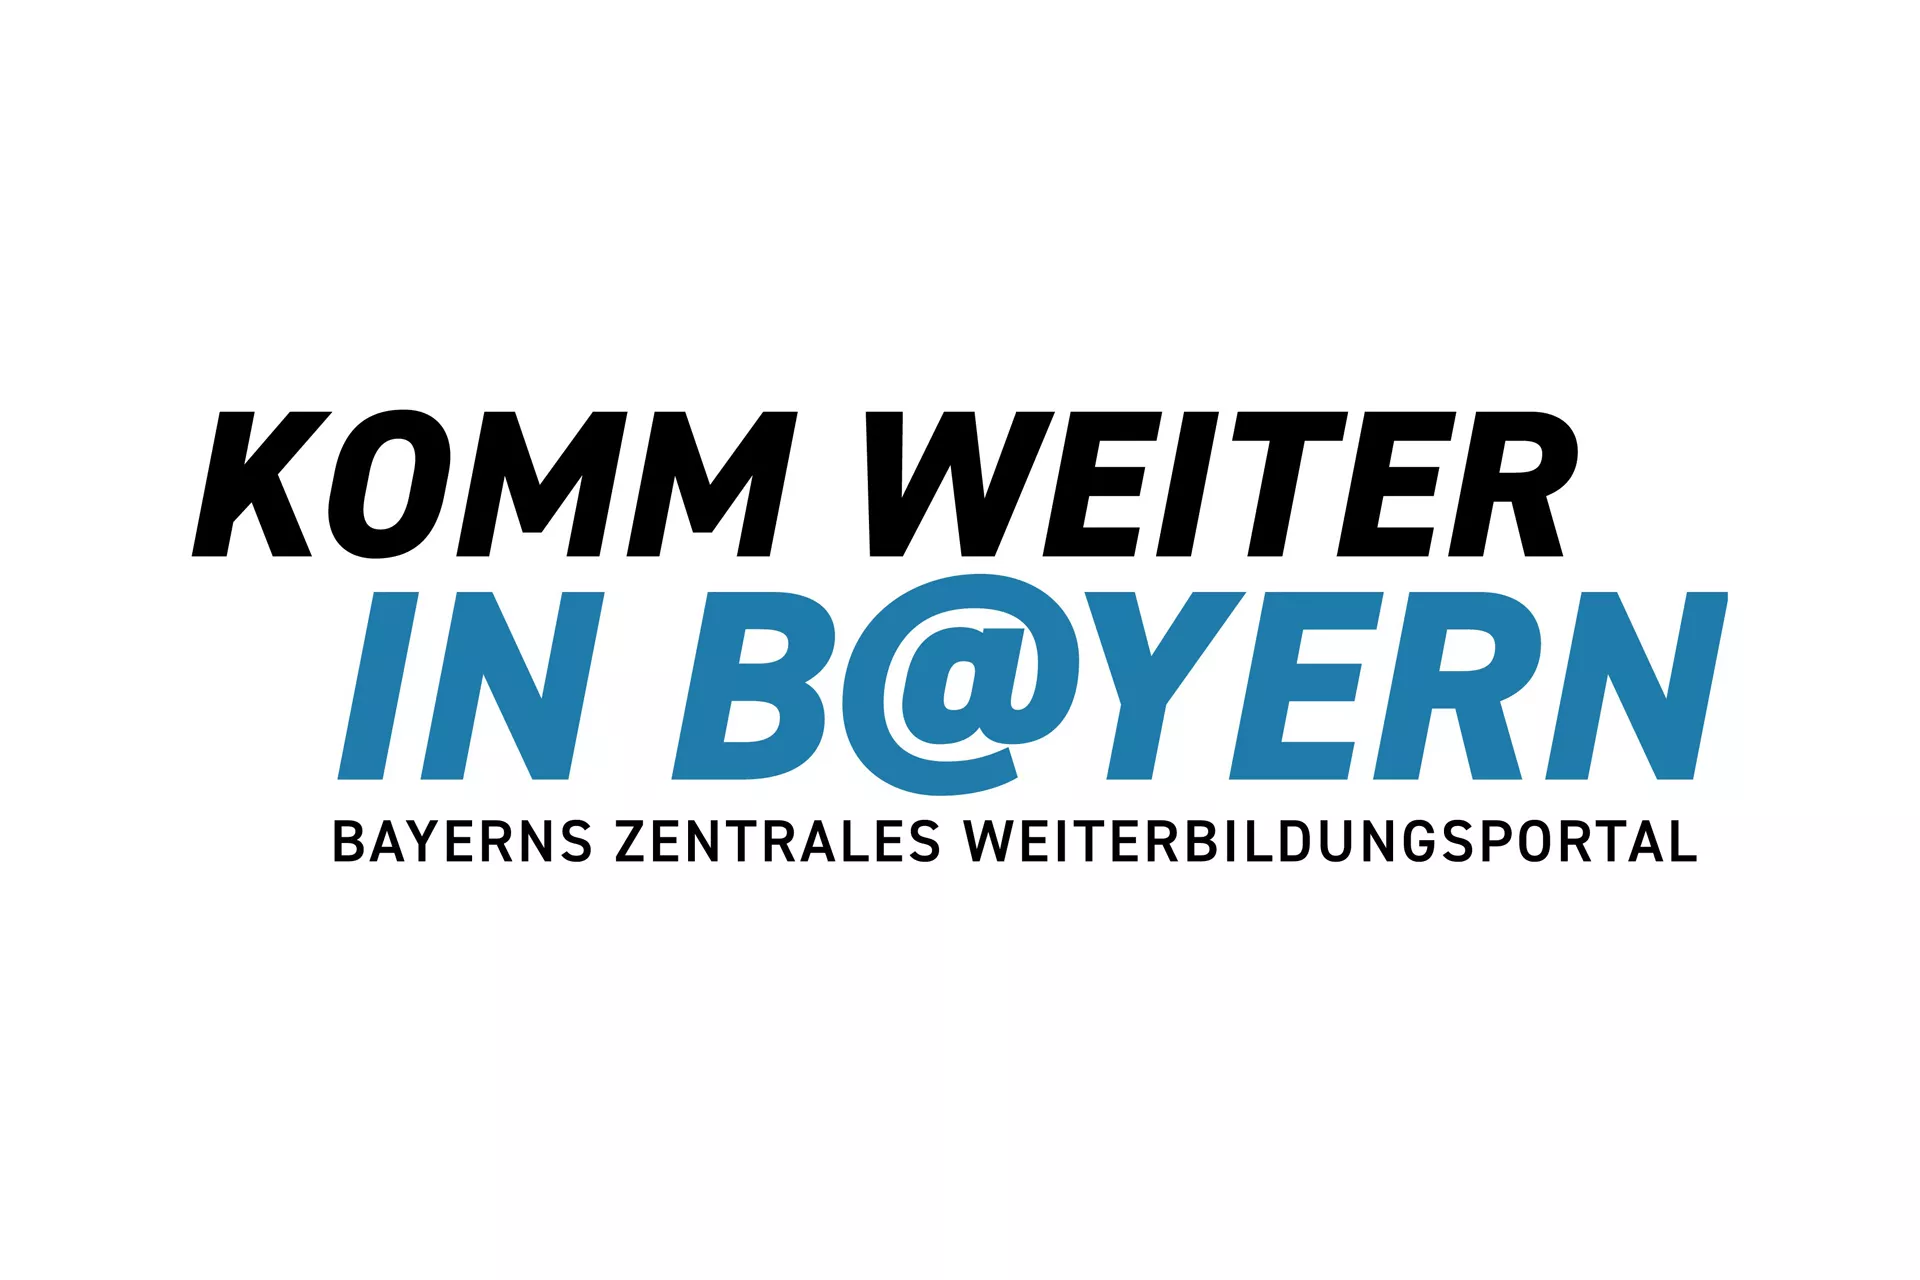 Text (schwarz-blau): KOMM WEITER IN B@YERN; Subline (schwarz): BAYERNS ZENTRALES WEITERBILDUNGSPORTAL